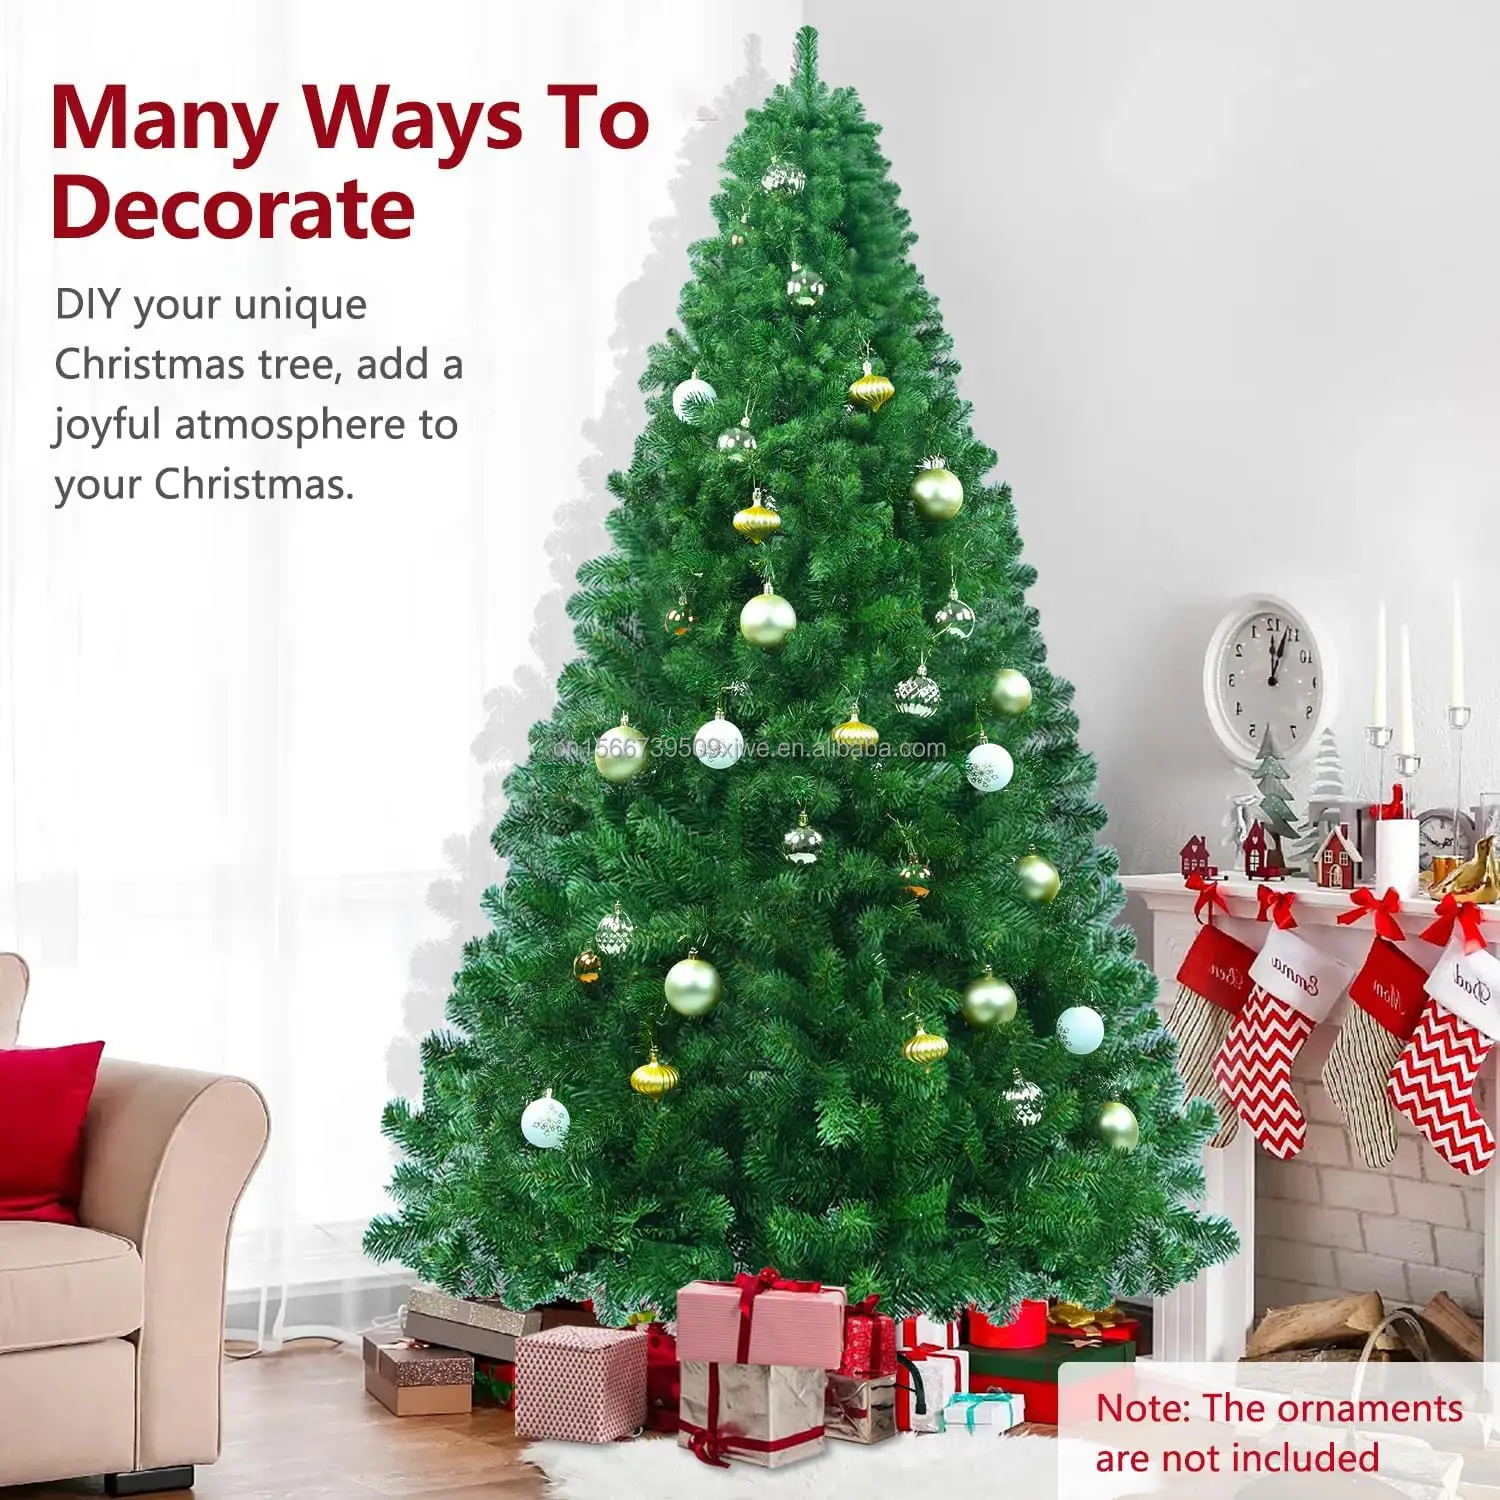 شجرة عيد الميلاد الصناعية من الكلوريد متعدد الفينيل بطول 210 سم من المصنع وتتميز بلون أخضر وهي شجرة عيد الميلاد على شكل قلم رصاص من الكلوريد متعدد الفينيل